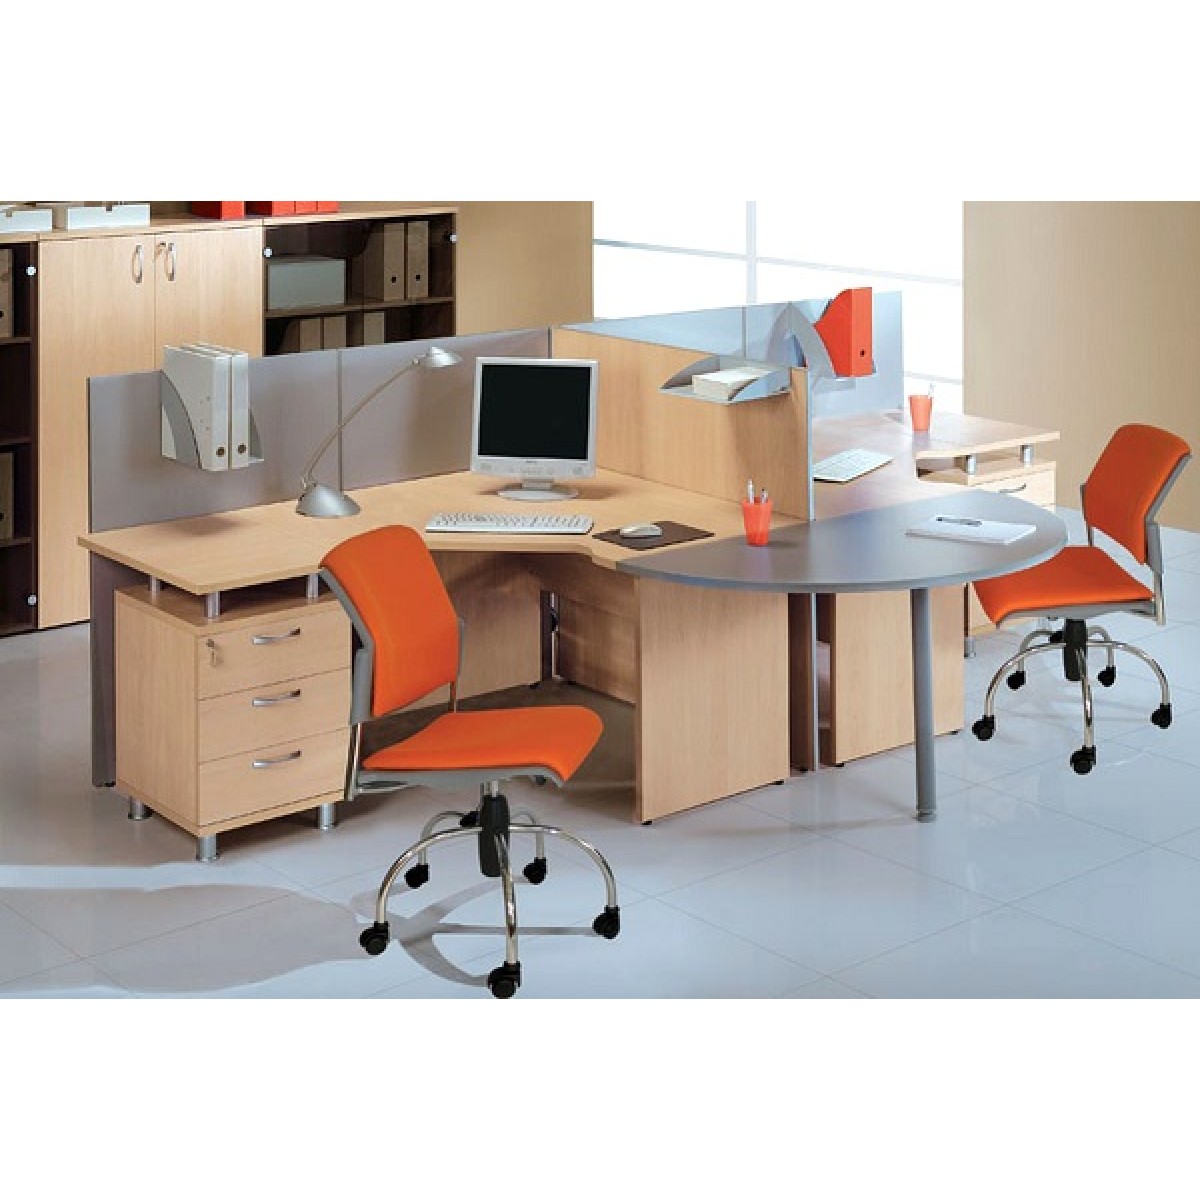 Спецмебель. Офисная мебель. Столы офисные для персонала. Мебель для бухгалтерии. Офисные столы для бухгалтерии.